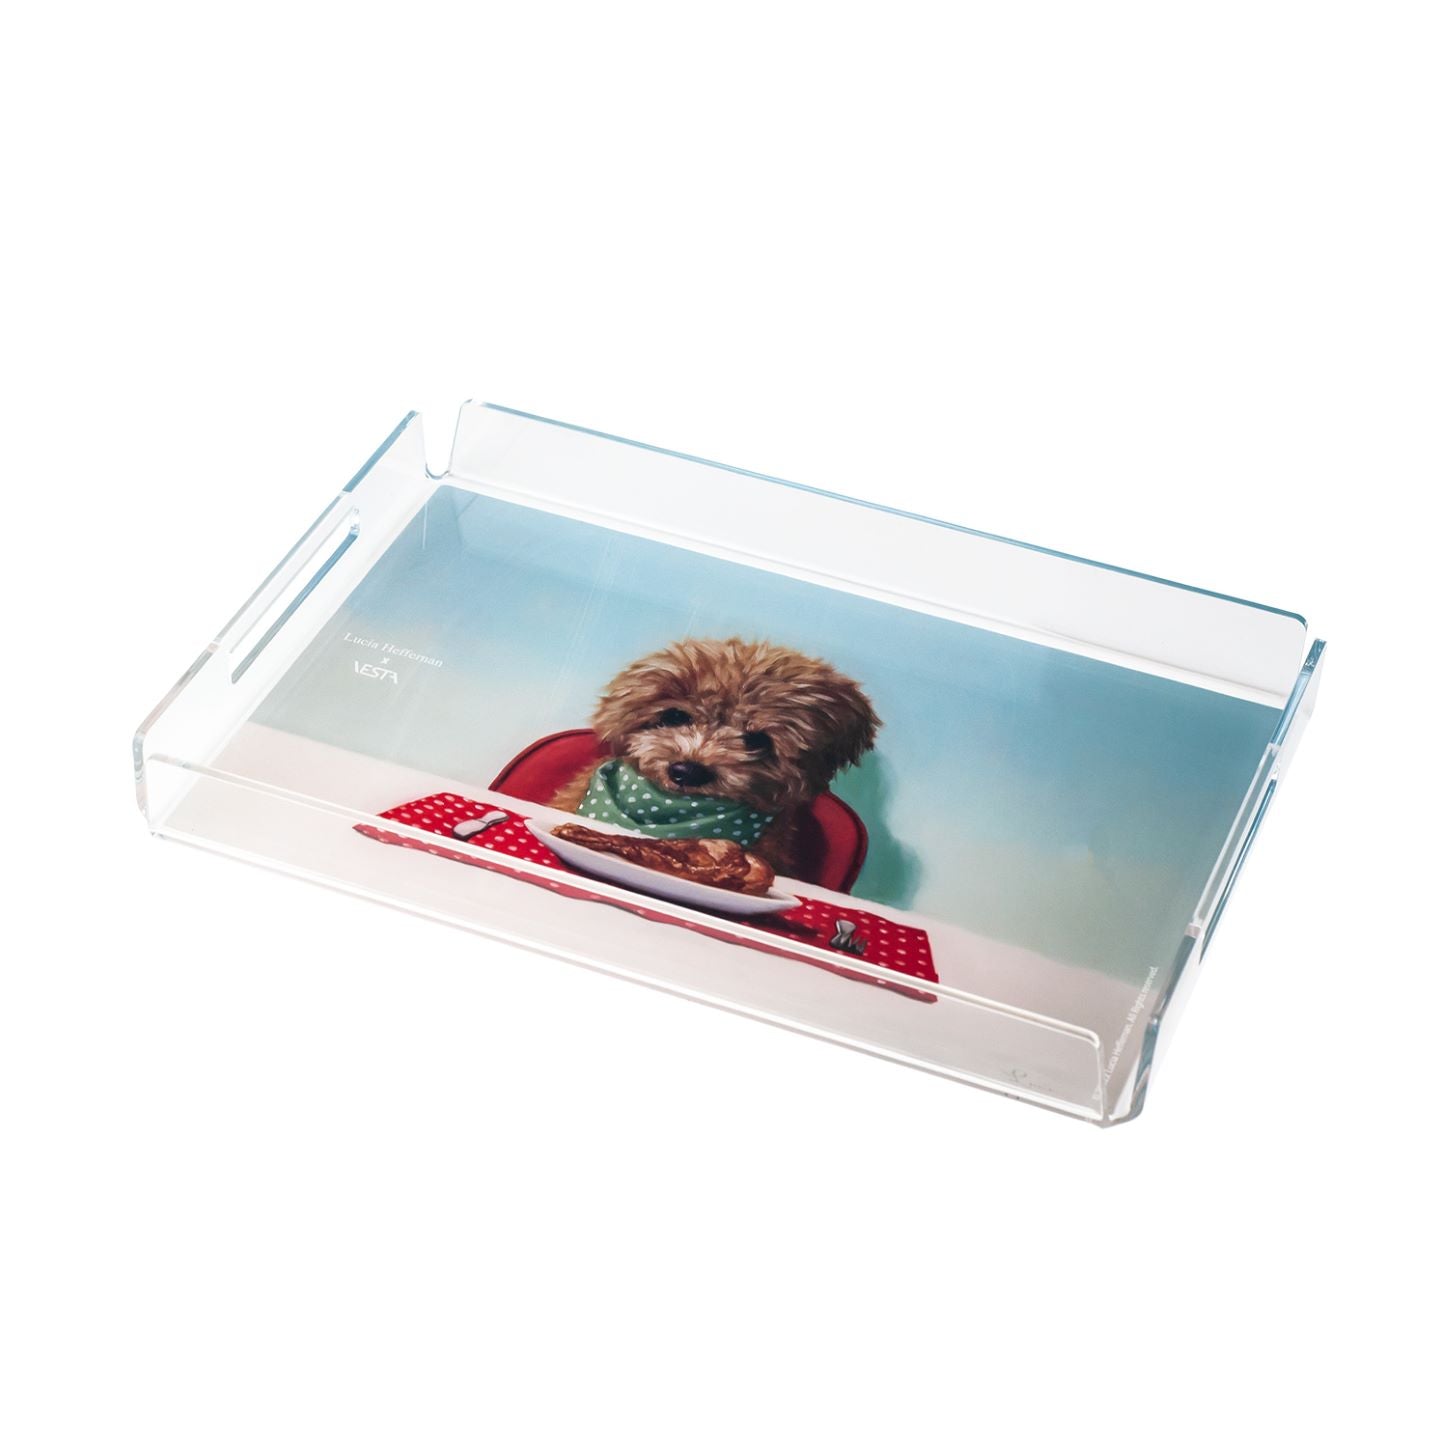 Vassoio in cristallo acrilico con decorazione retrospampata " Puppy Chow" Dimensioni: cm 32 x 22 x 3,5 h, spessore 5 mm. In negozio e online su tuttochic.it